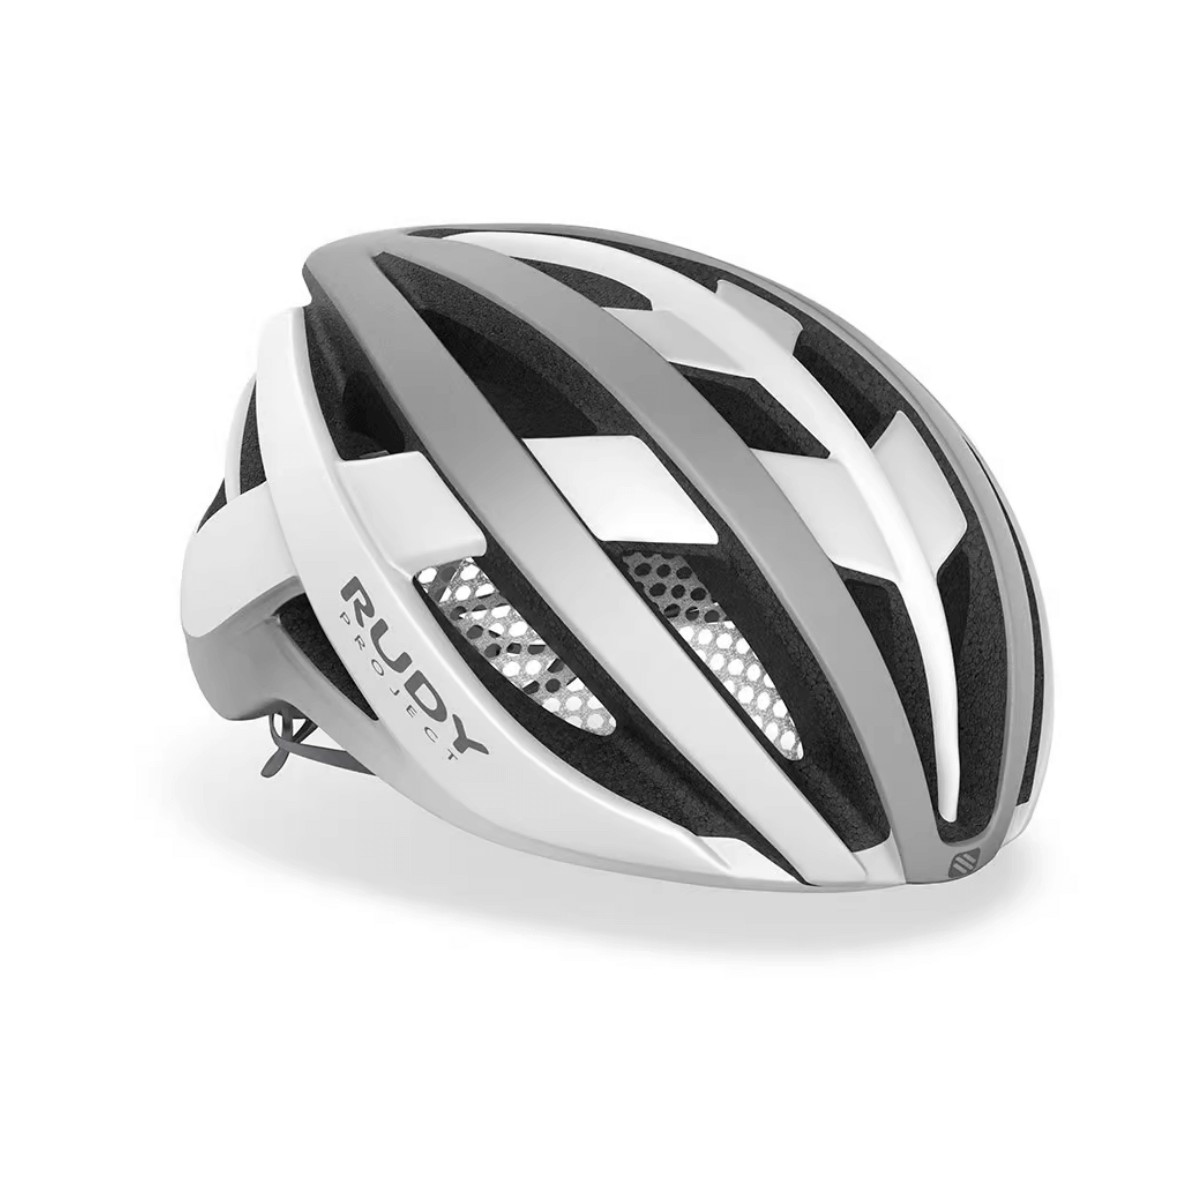 Rudy Project Venger Helmet Gray White, Size S (51-55 cm)